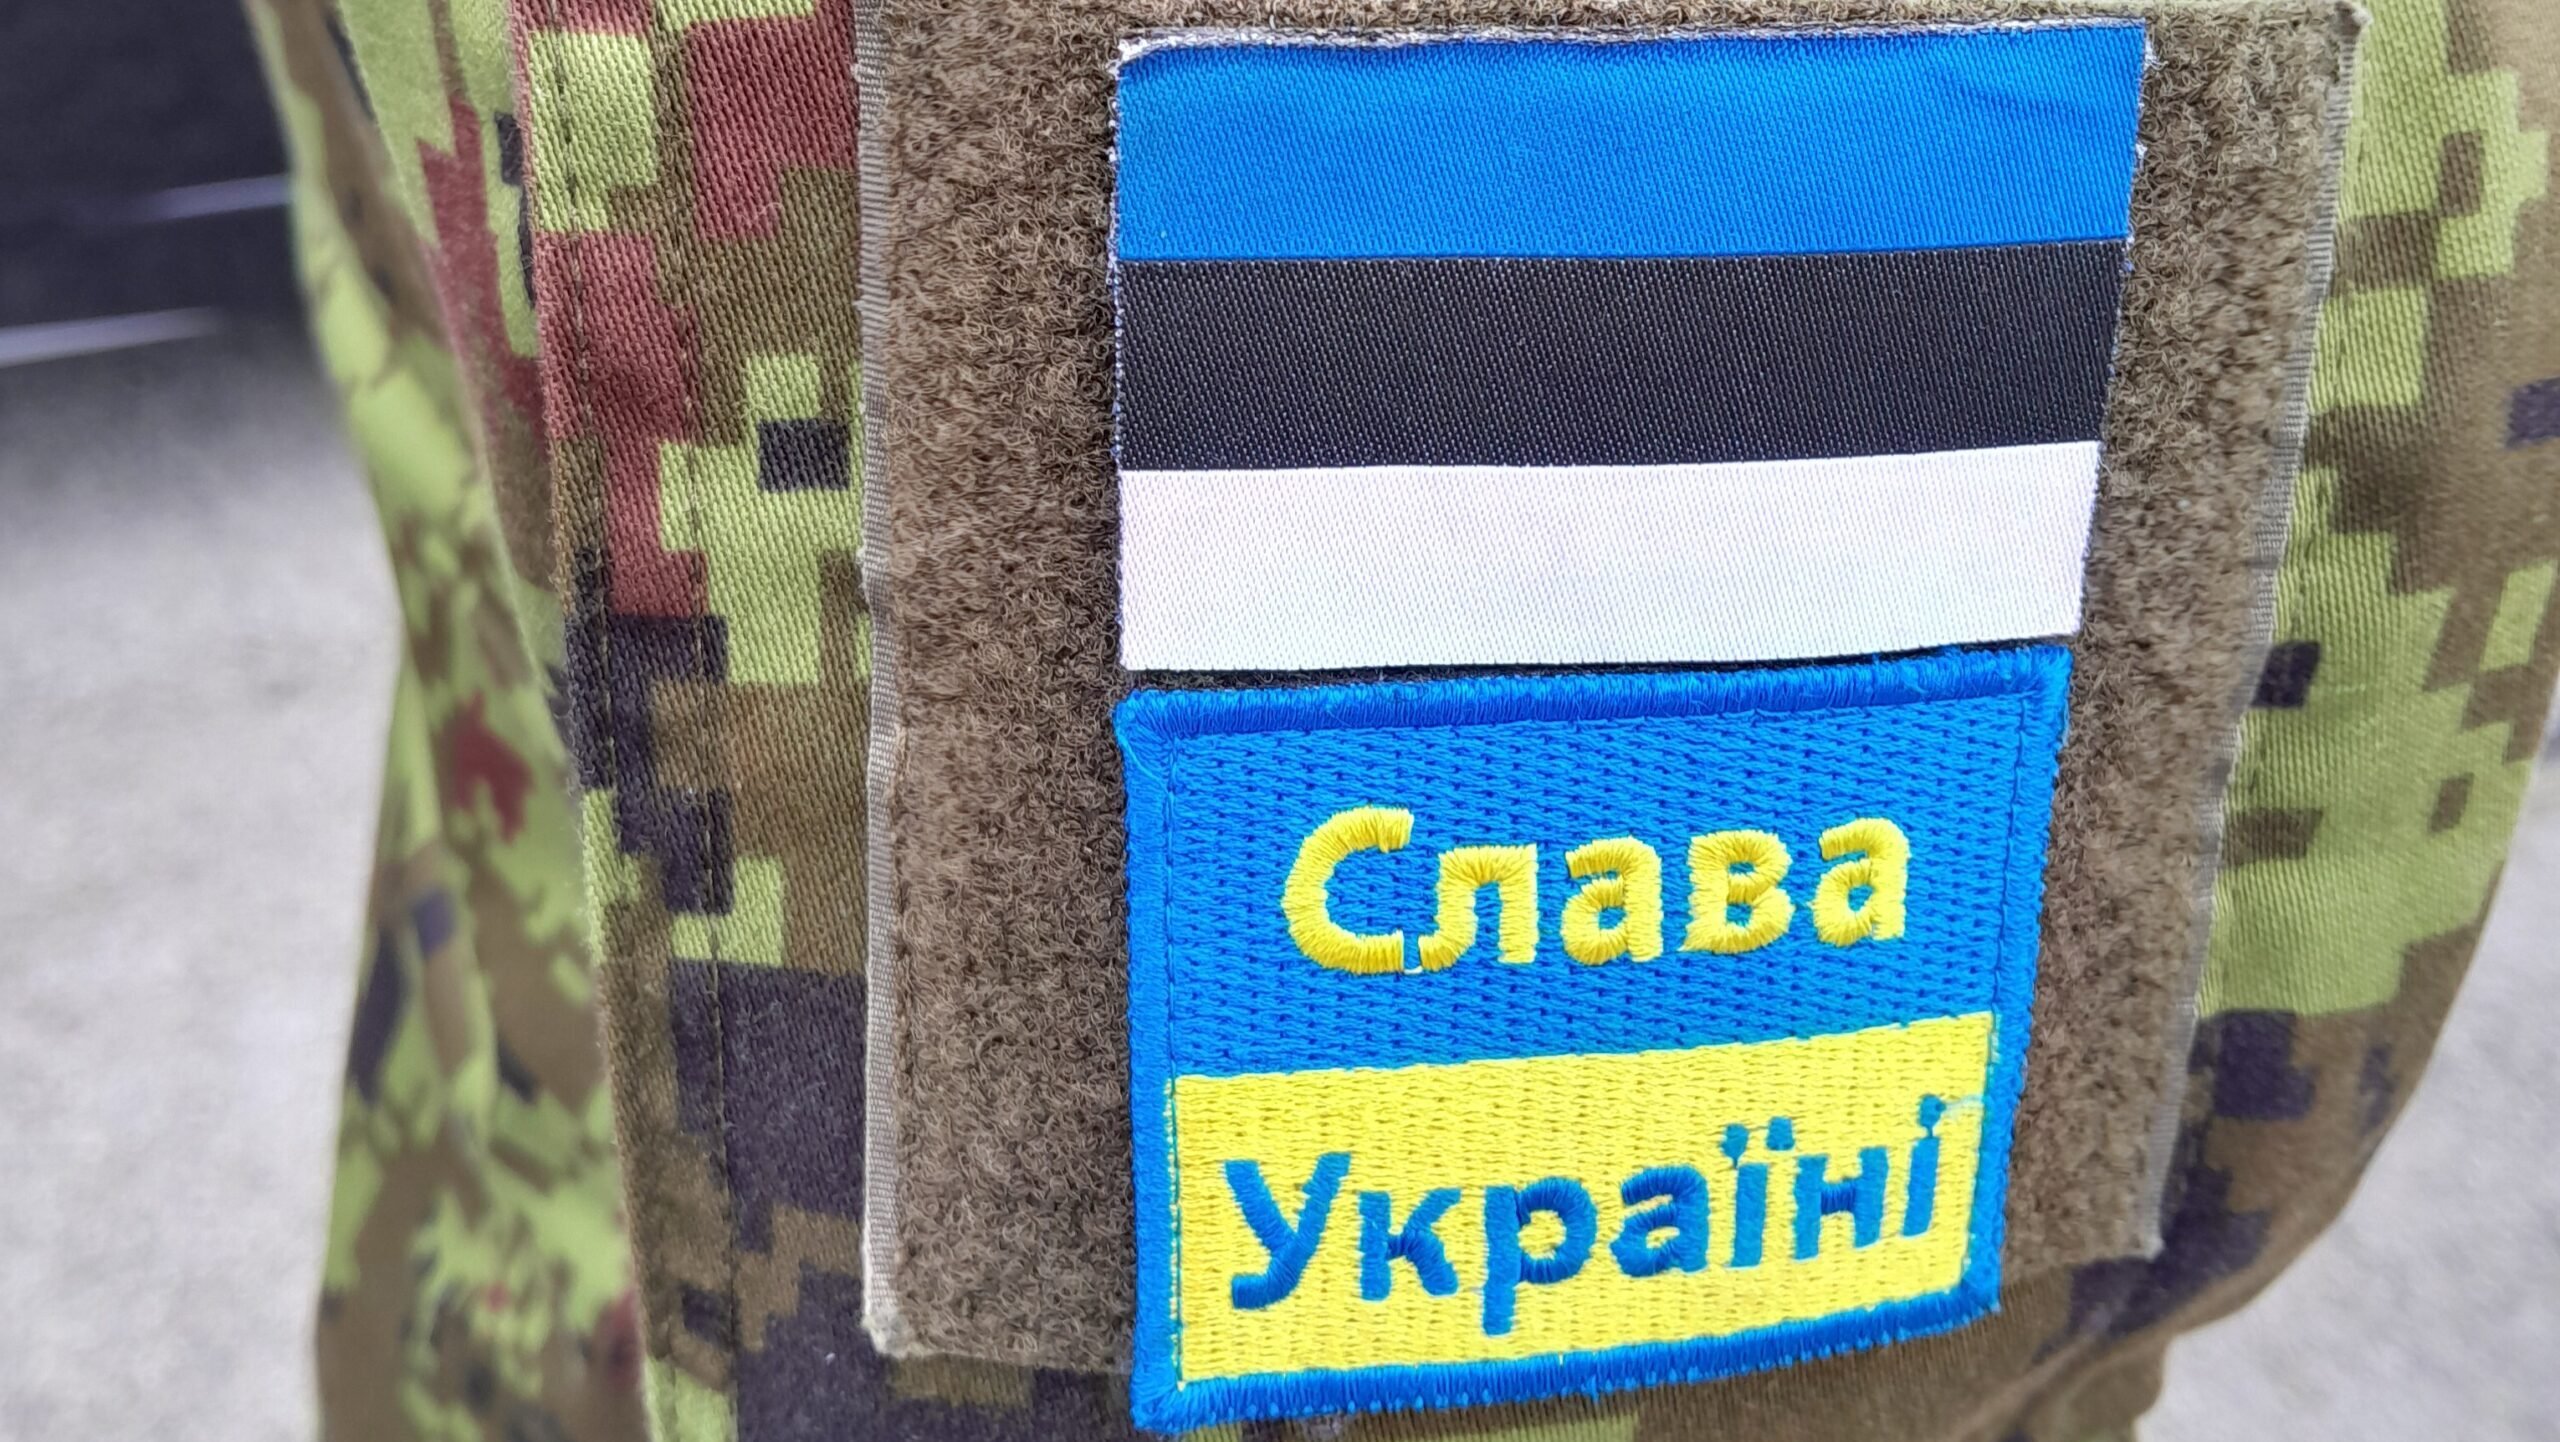 Estonia had discussed sending non-front line troops to Ukraine: General